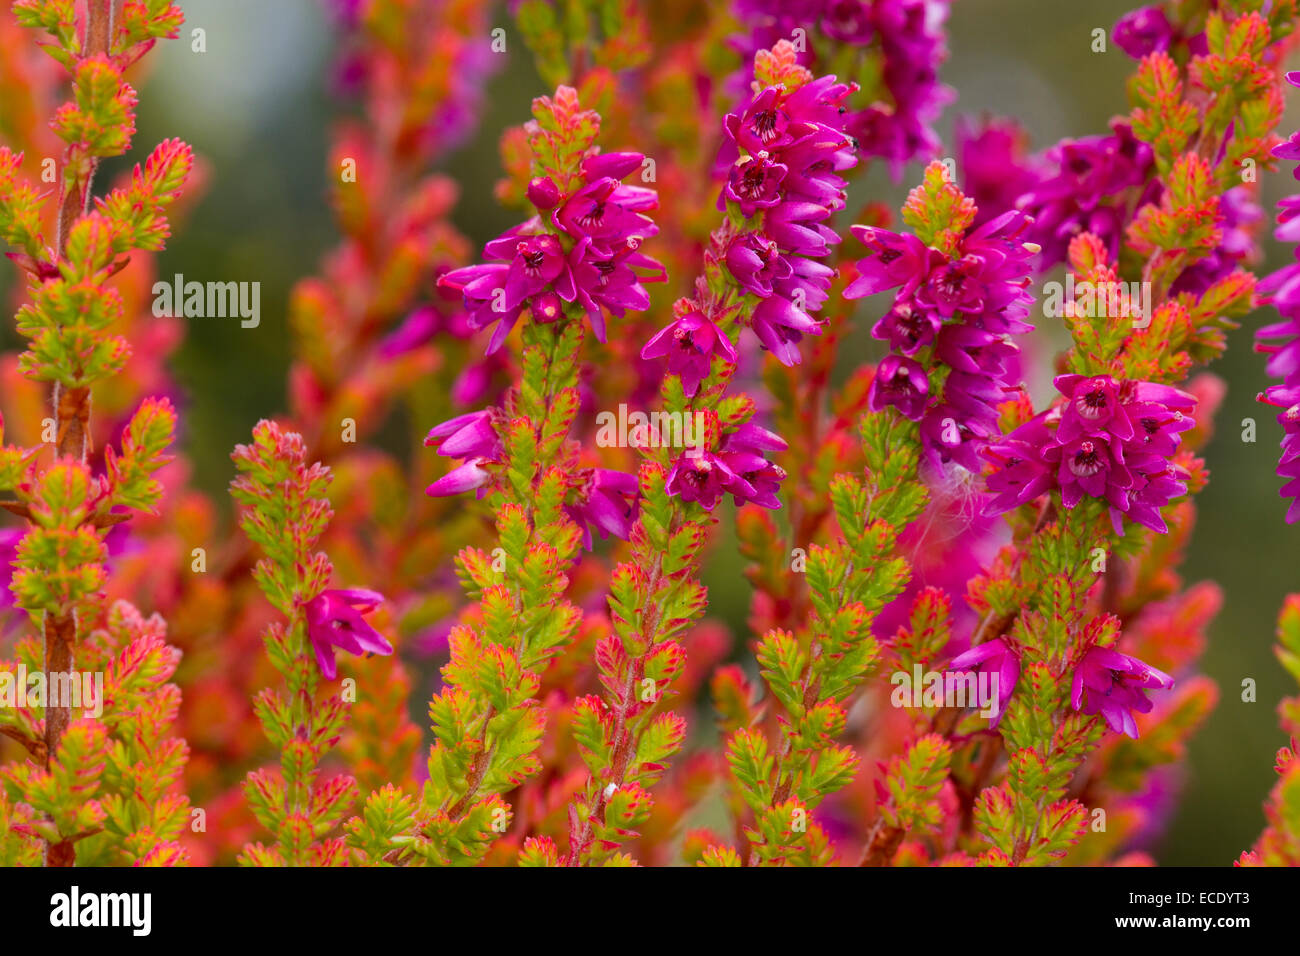 Gemeinsamen Heather oder Ling (Calluna Vulgaris) "Firefly" Vielfalt in einem Garten blühen. Powys, Wales. August. Stockfoto